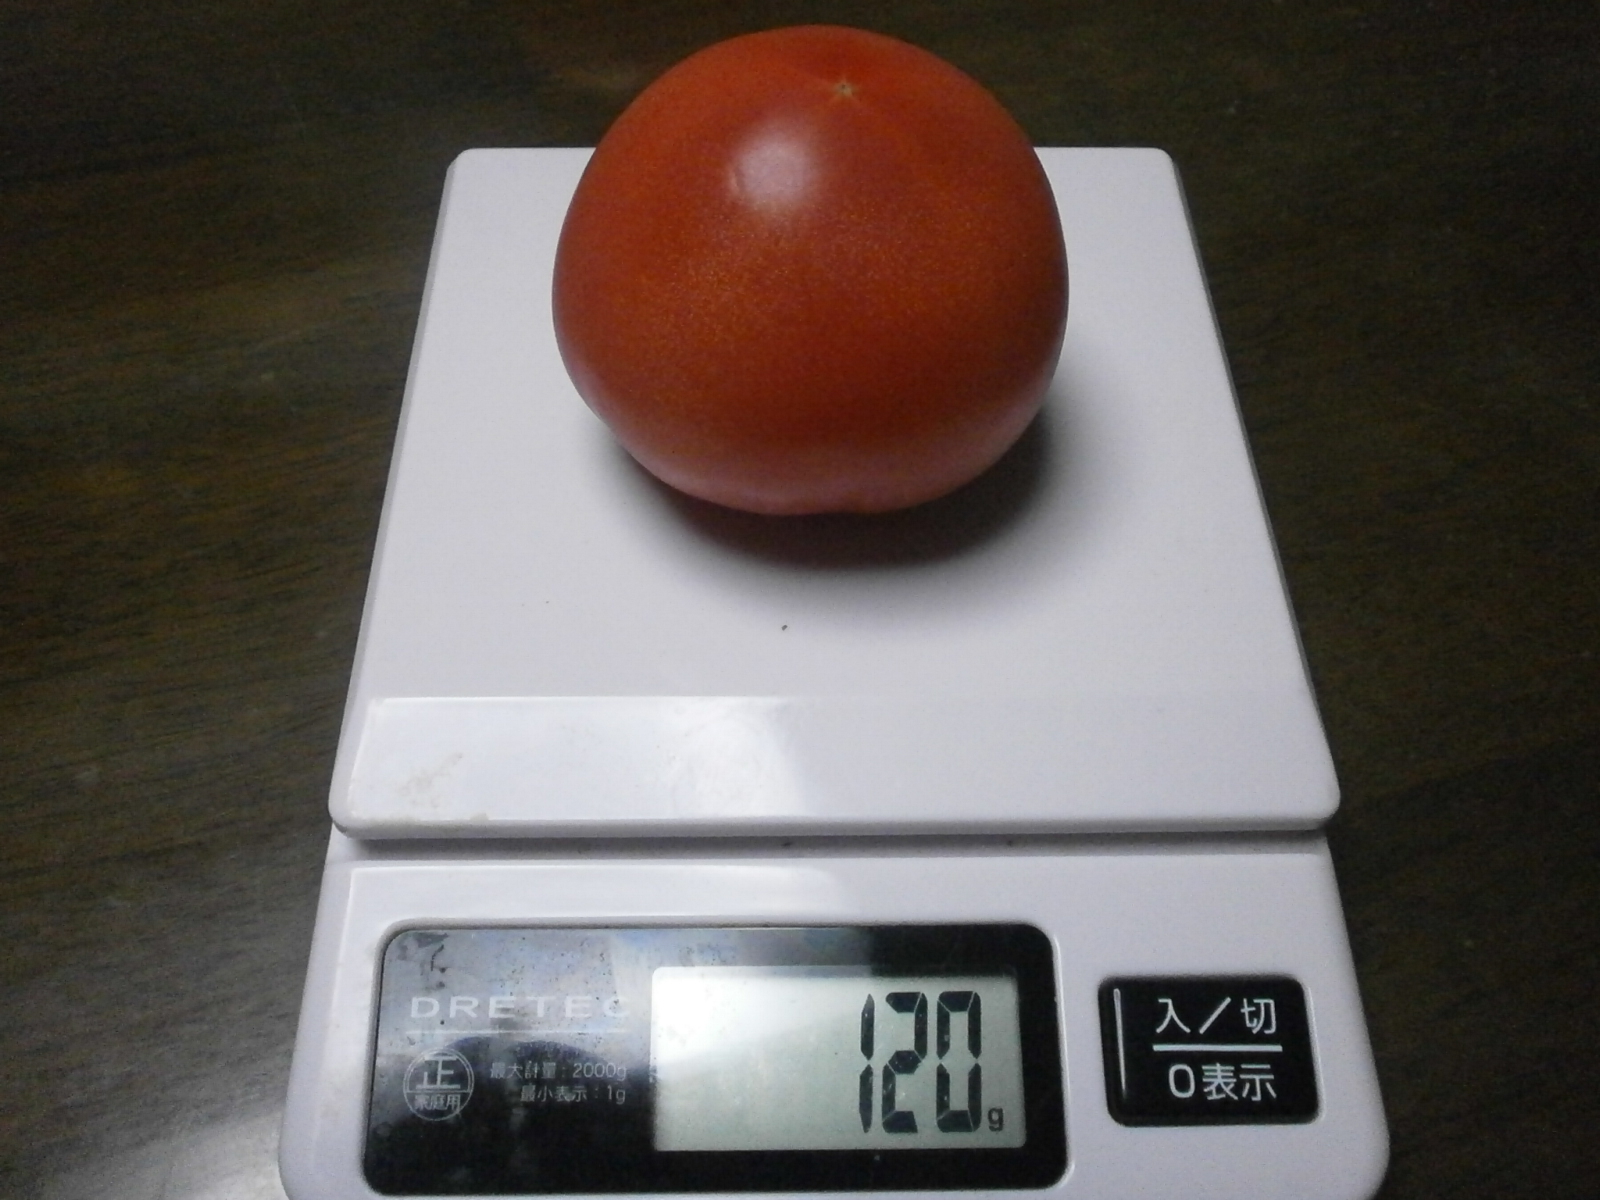 Tomate (141 g/ 121 g /136 g/120 g)